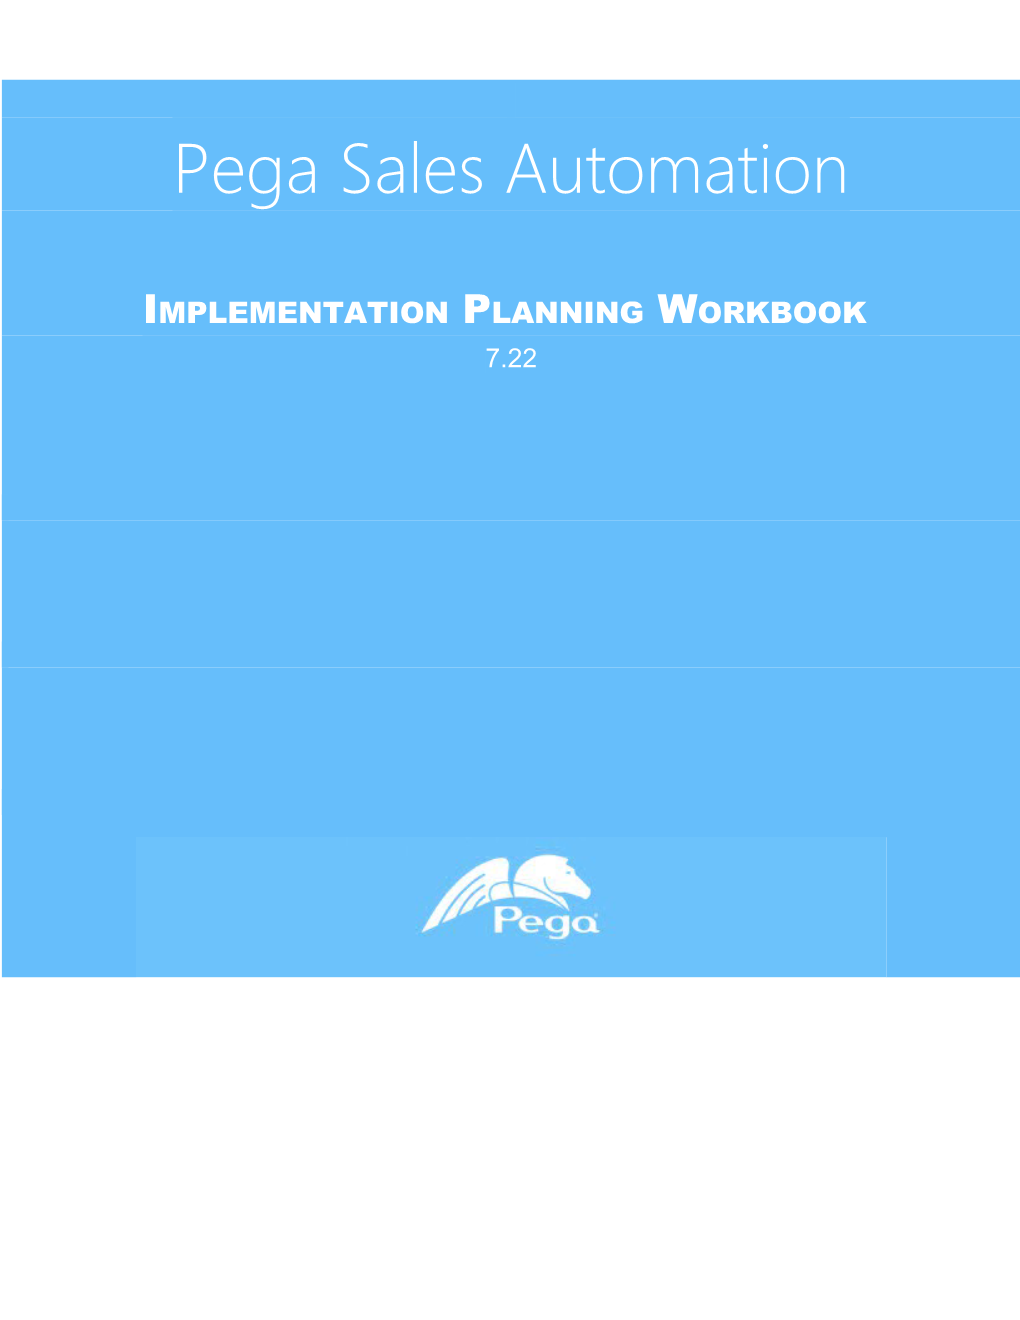 Implementation Planning Workbook